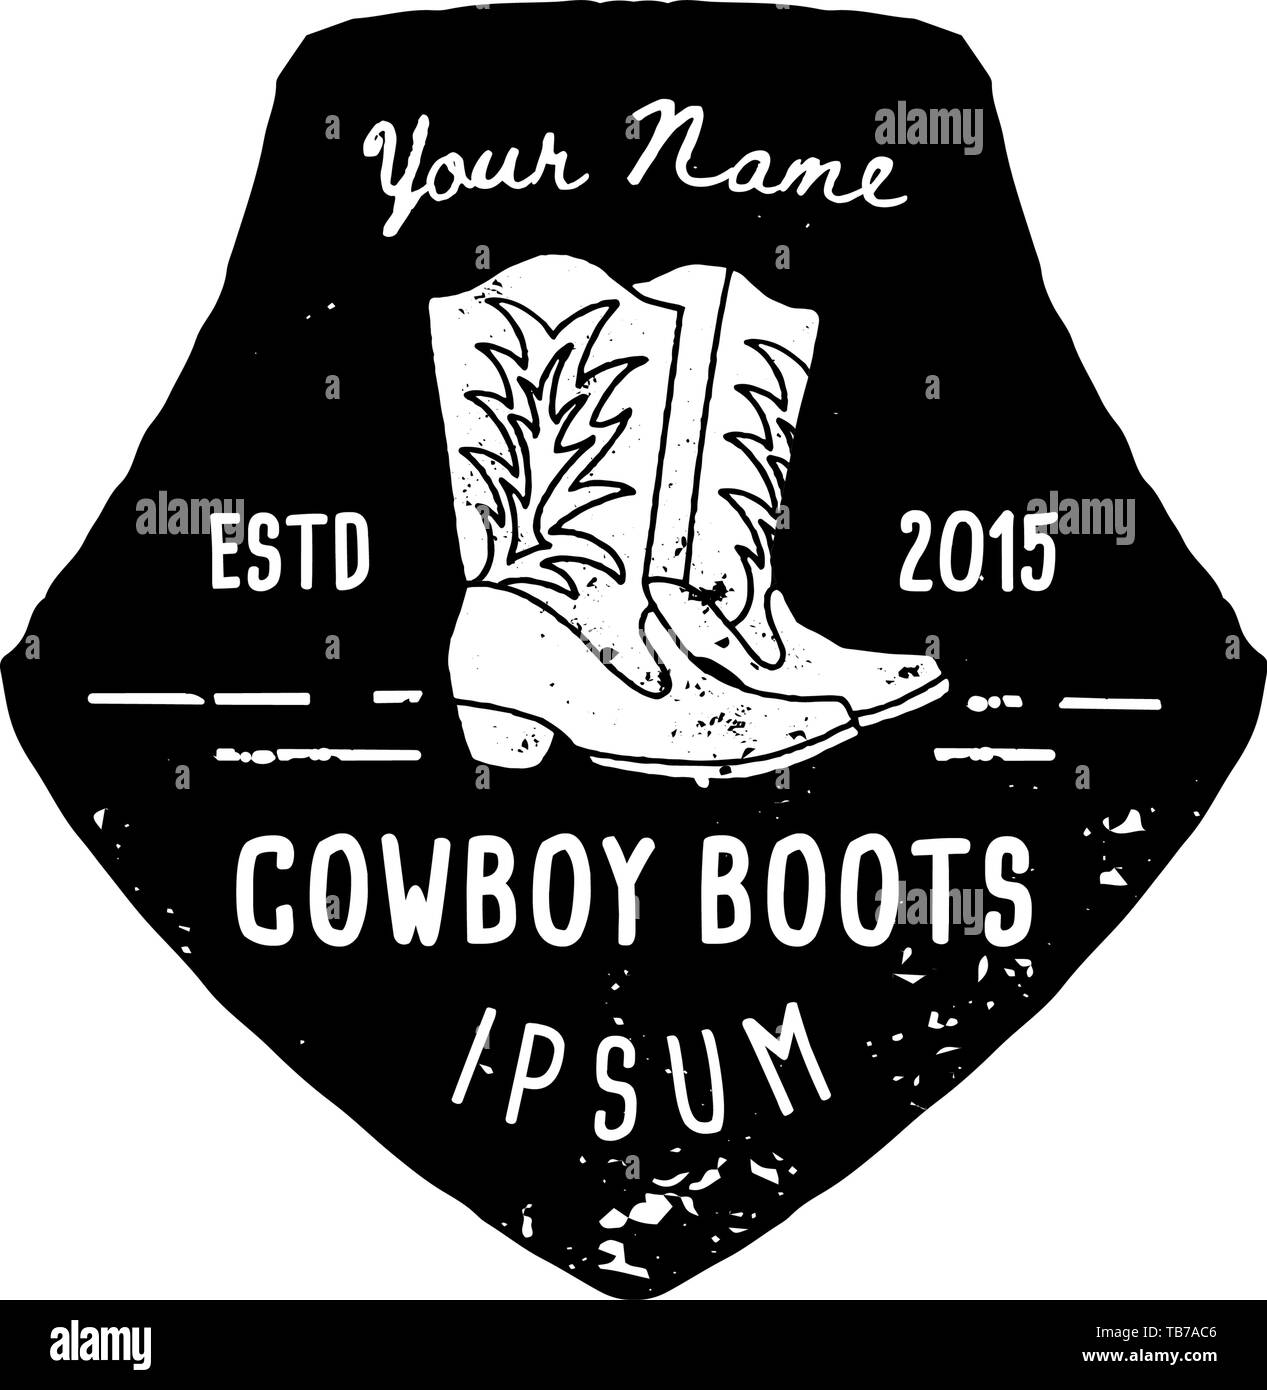 Logo de l'Ouest cowboy boots part attirer Grunge style. Le symbole Wild West chanter d'un cow-boy et Retro typographie. Emblème Vintage fait main pour bottes de cow-boy, poster, t-shirt, couvrir, la bannière Illustration de Vecteur